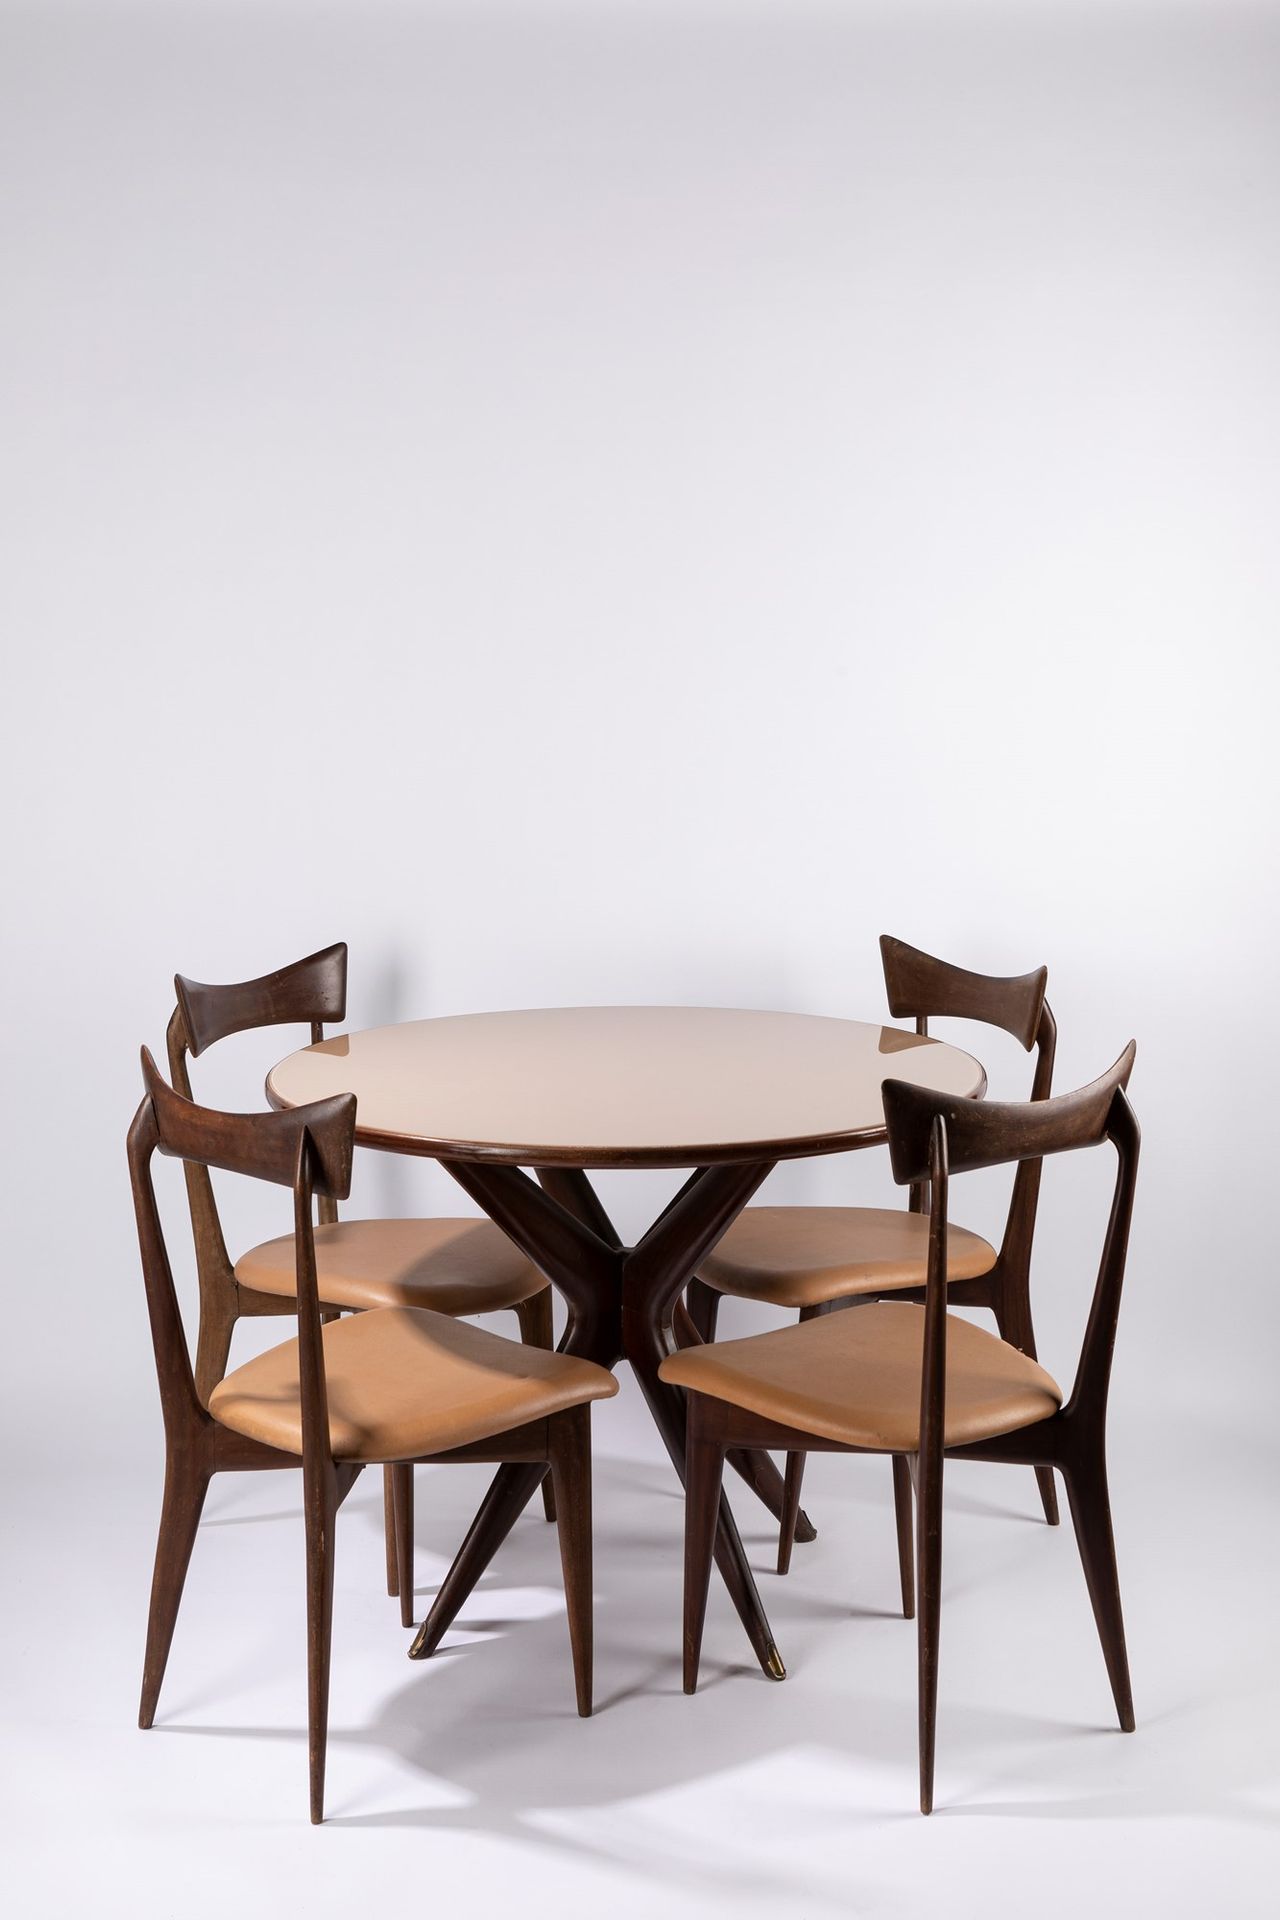 Ico & Luisa Parisi Tisch und vier Stühle, 1950 ca.

Tisch H 78 x Ø 100 cm - Stuh&hellip;